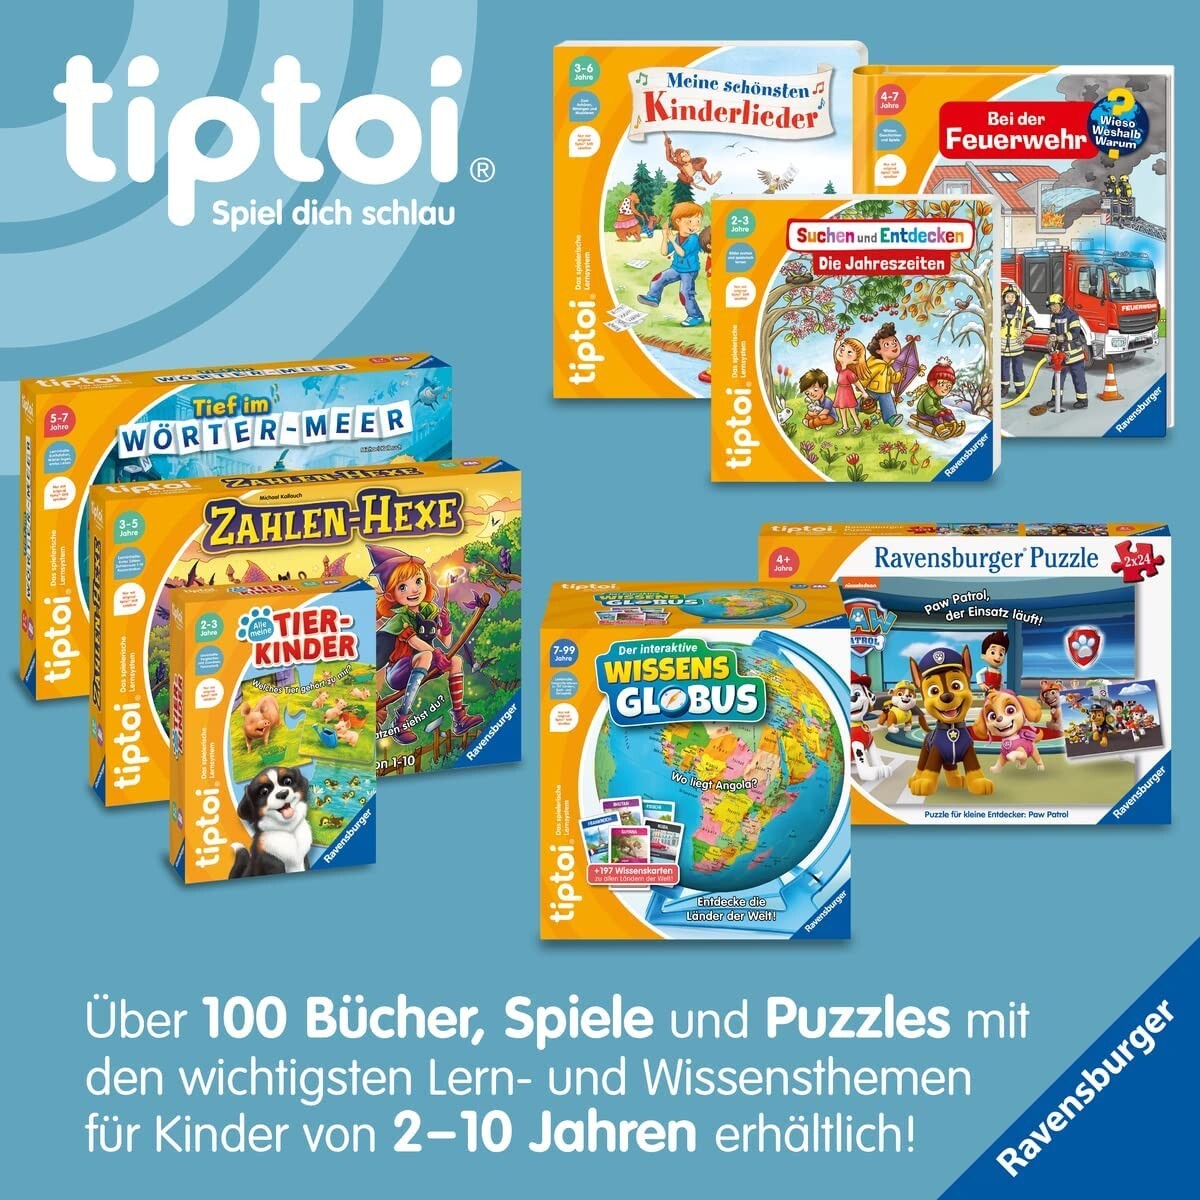 Ravensburger tiptoi Starter-Set 00114: Stift und Bauernhof-Buch - Lernsystem für Kinder ab 4 Jahren